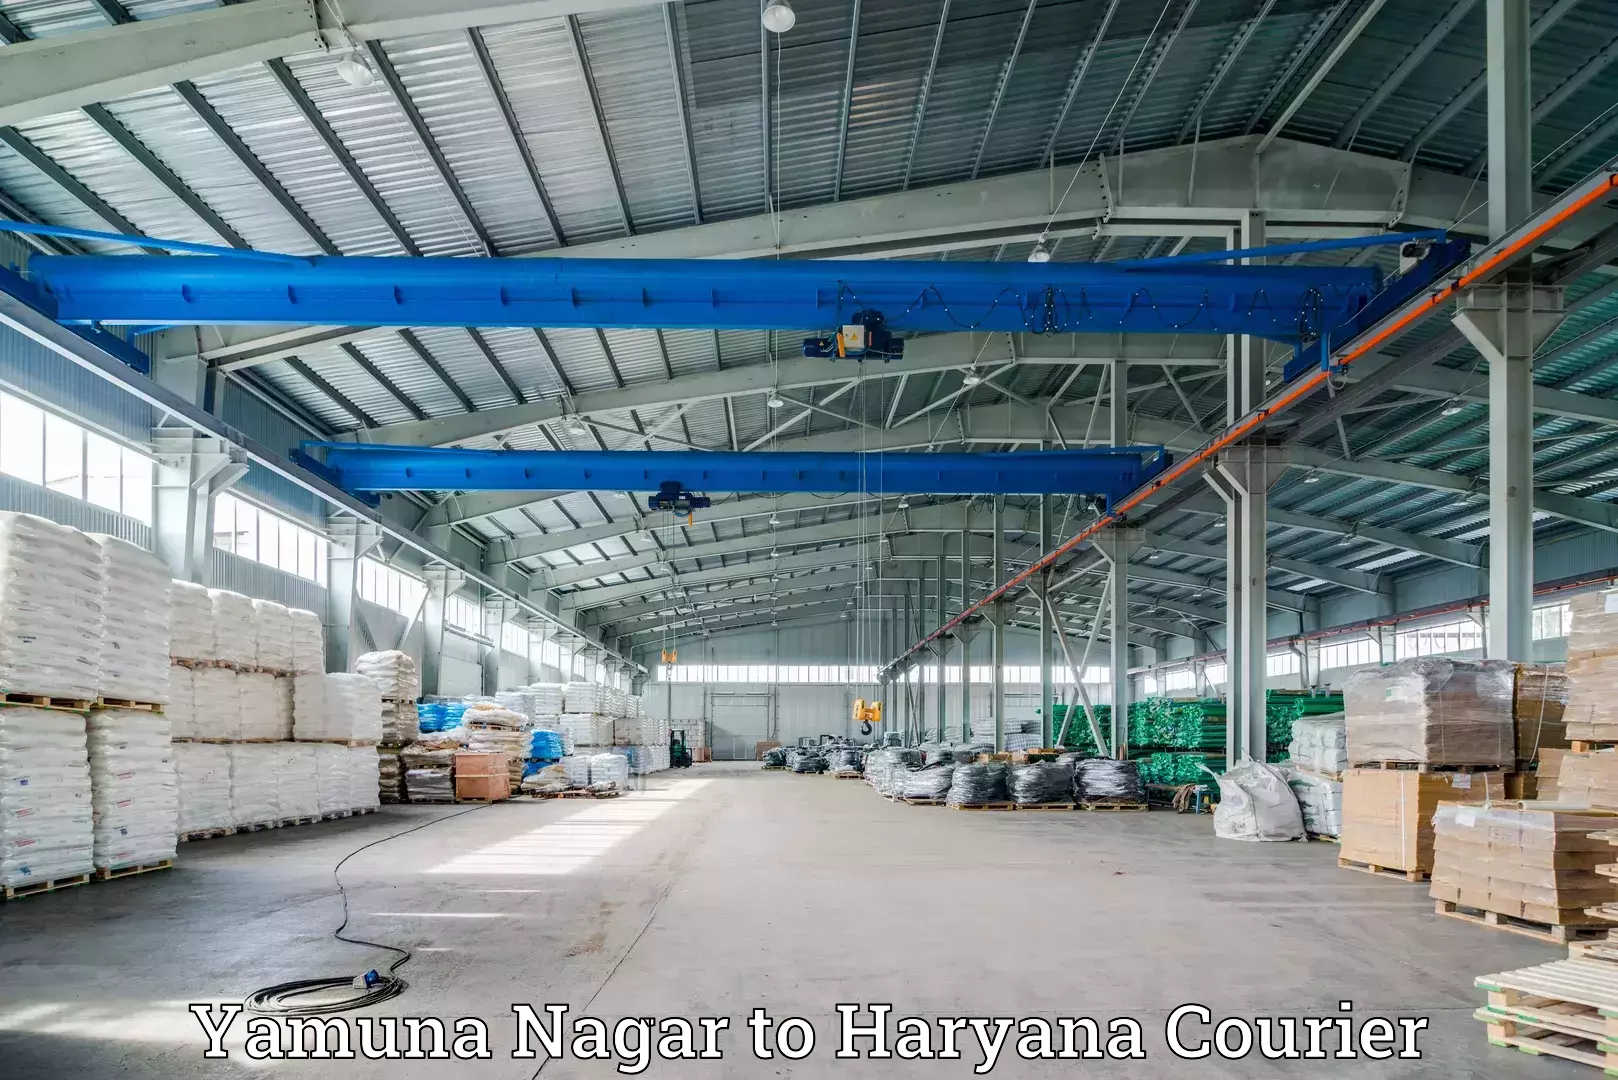 Logistics service provider Yamuna Nagar to Haryana